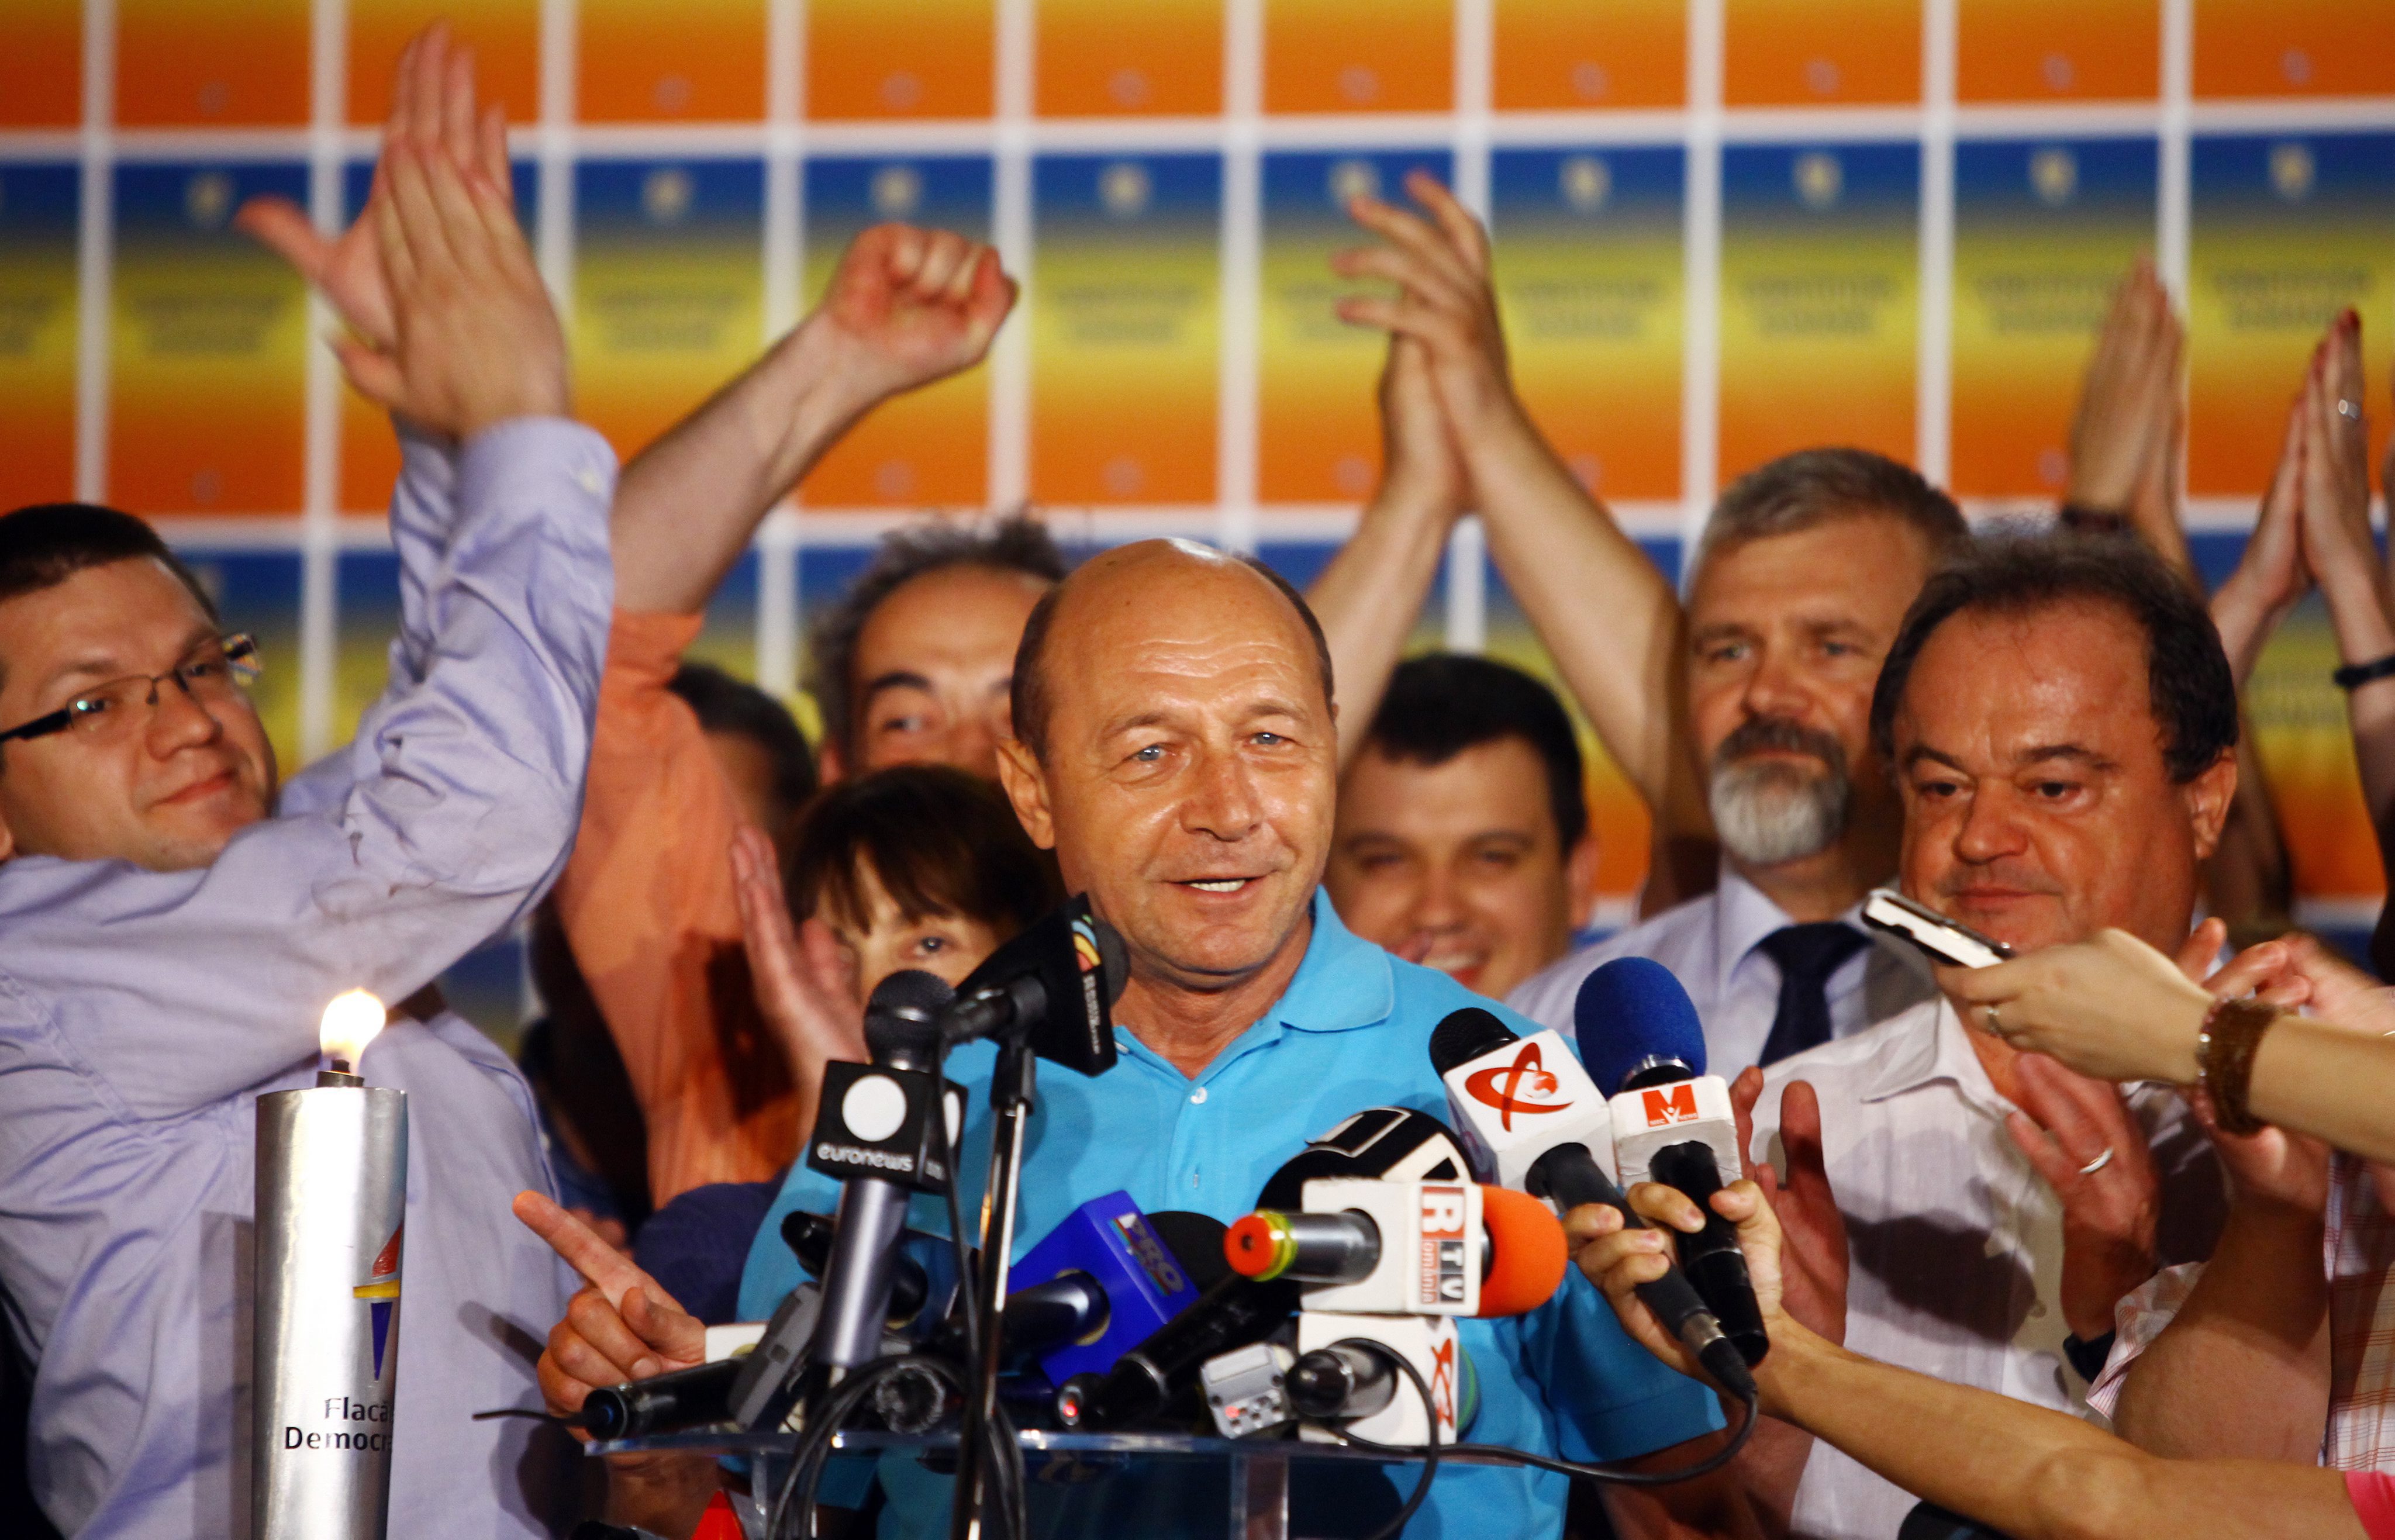 Траян Бъсеску ще се върне на поста си, след като бе свален от парламента